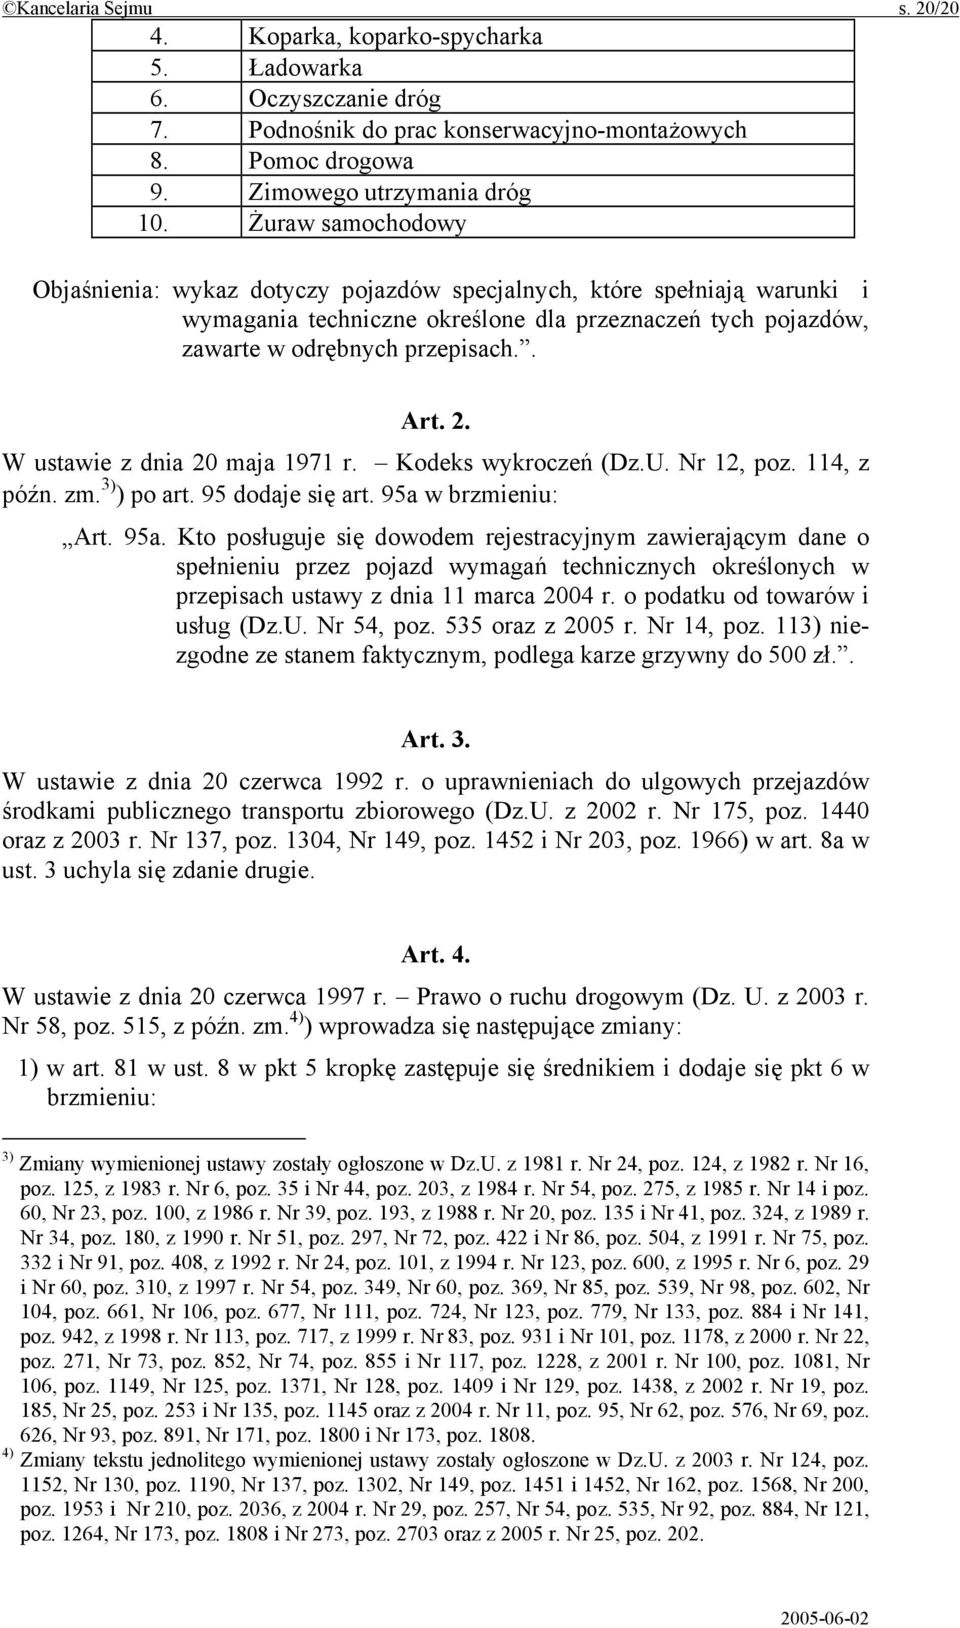 W ustawie z dnia 20 maja 1971 r. Kodeks wykroczeń (Dz.U. Nr 12, poz. 114, z późn. zm. 3) ) po art. 95 dodaje się art. 95a 